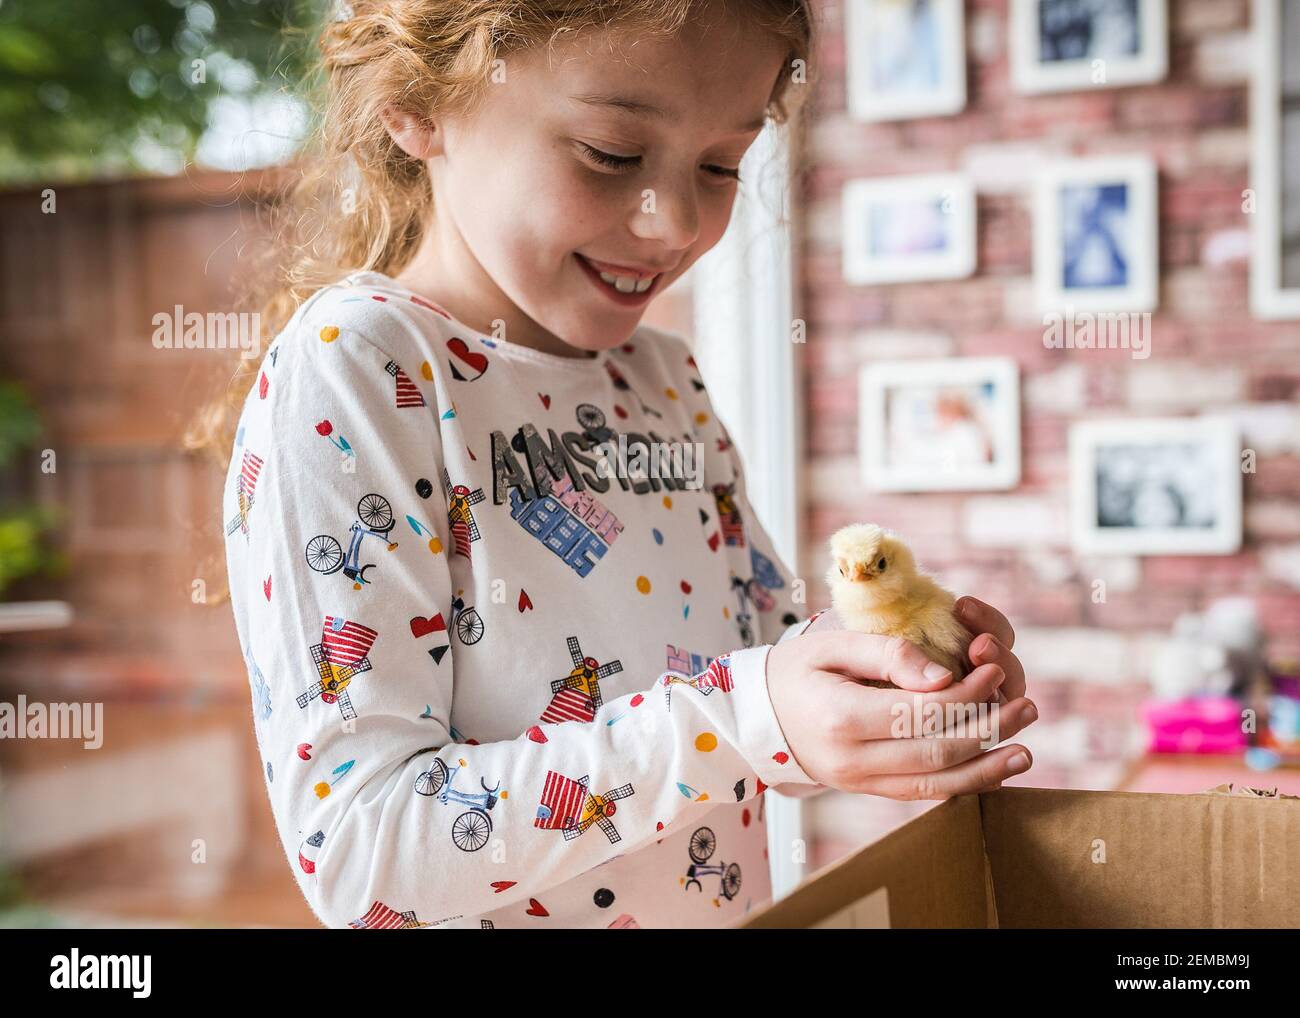 Giovane ragazza felice tenendo un nuovo bambino giallo peloso carino pulcino adorabile appena schiusa a casa in incubatore lei è eccitato e pollo guardando la macchina fotografica Foto Stock